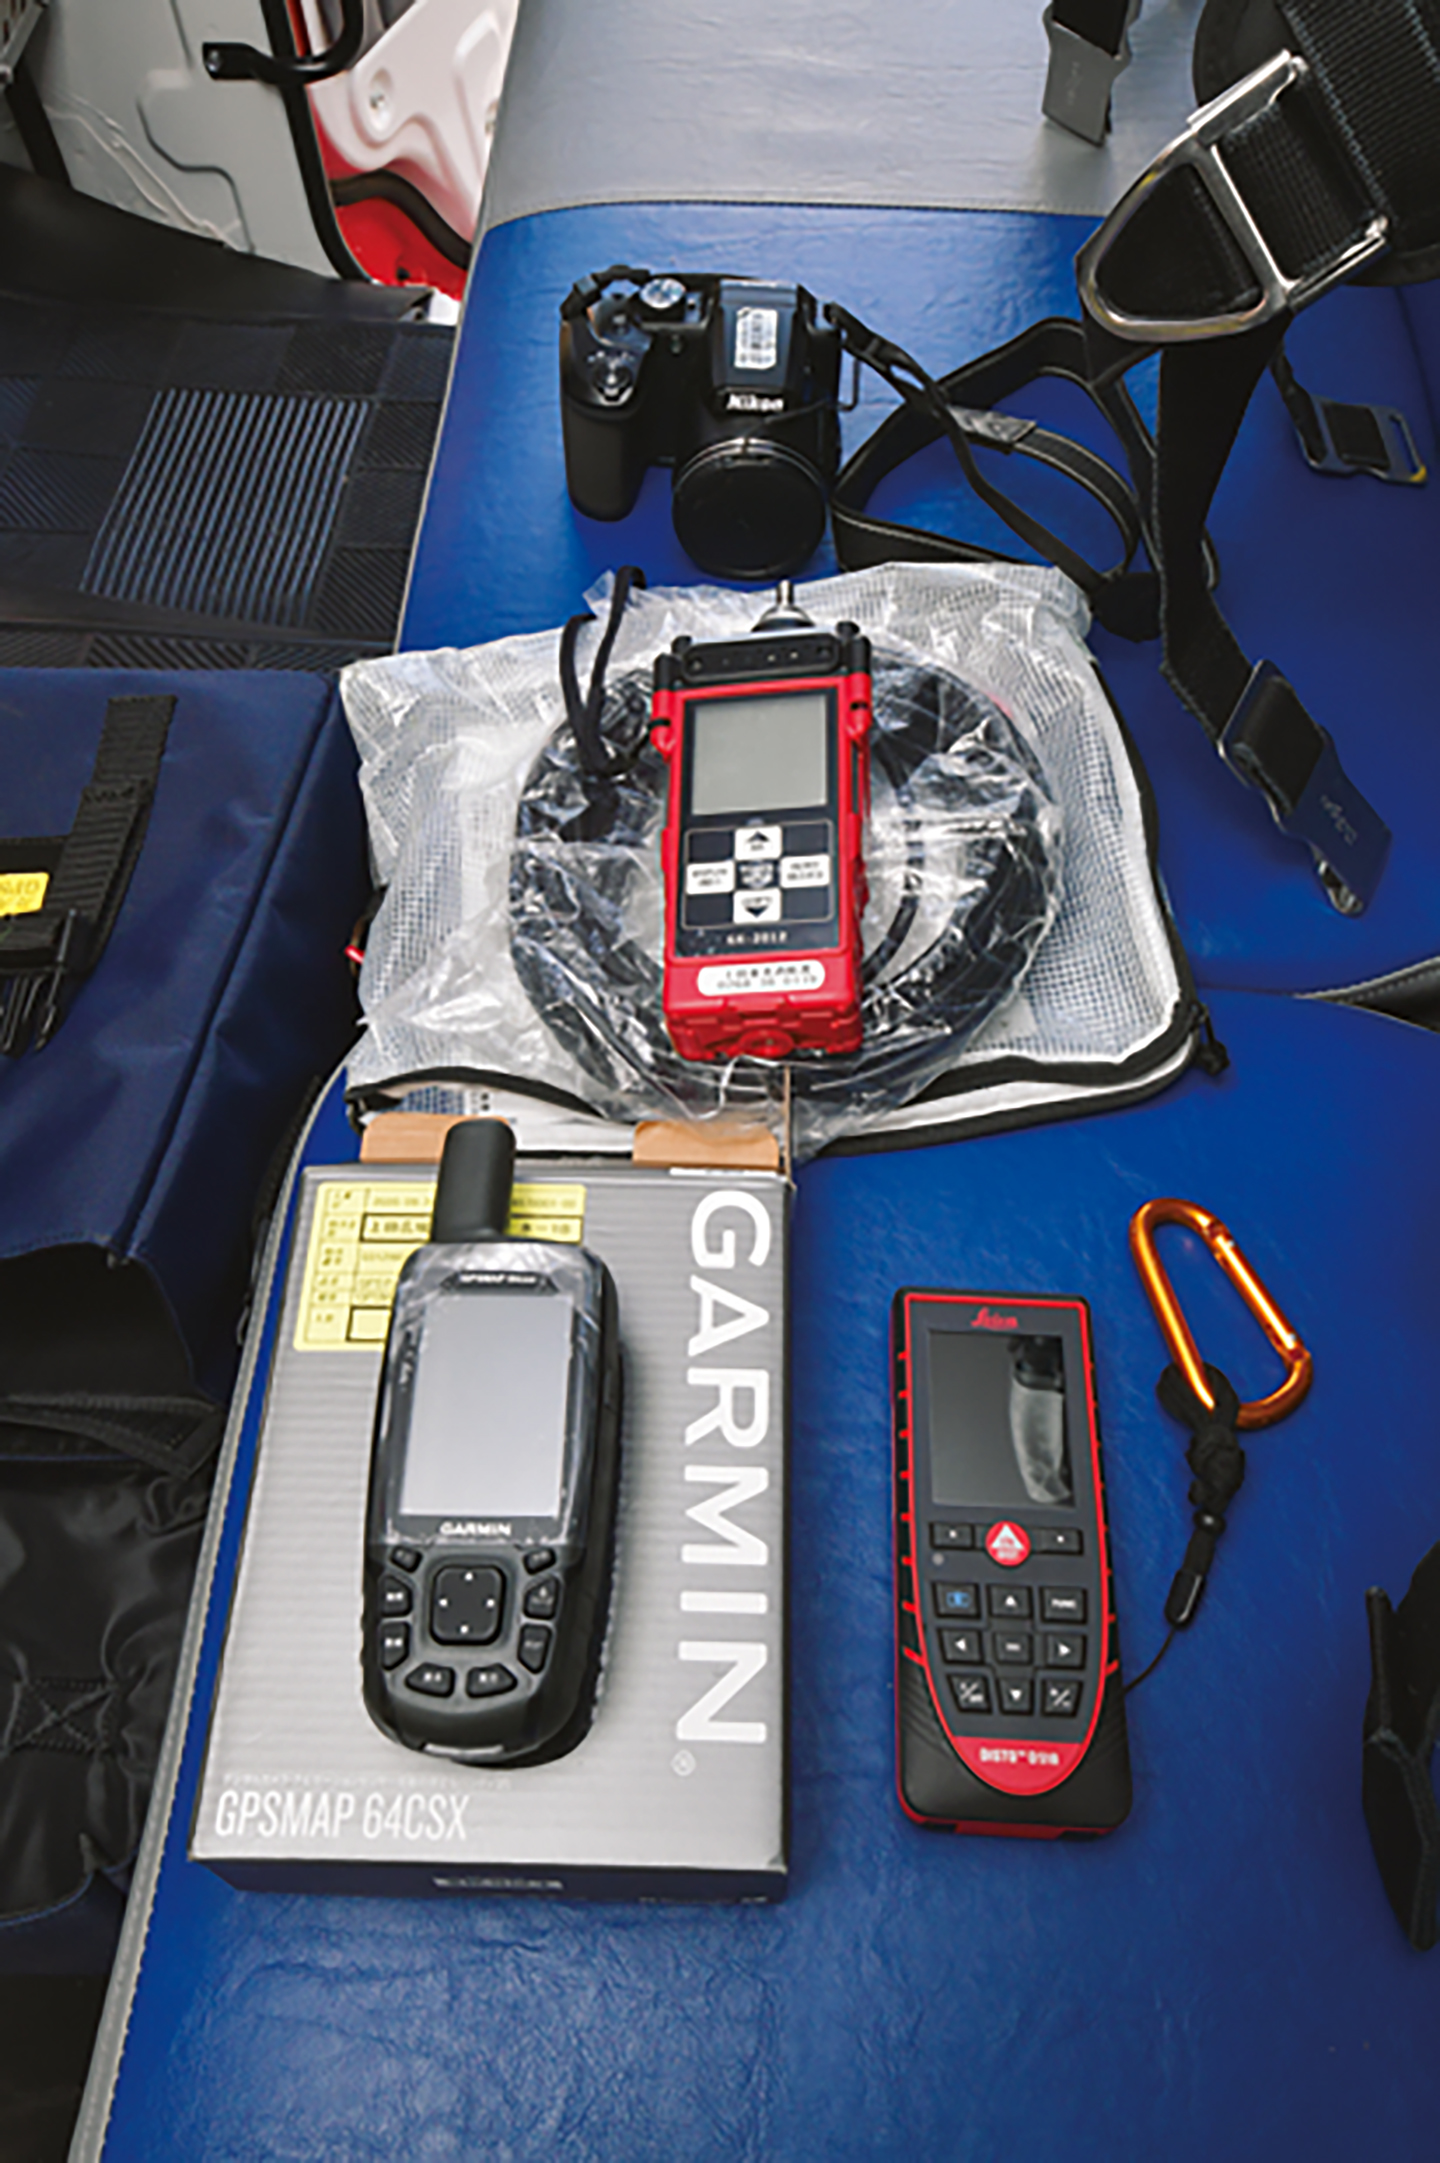 車内へは、ガス検知器・レーザー測距器・GPSマップといった電子機材も搭載。山岳救助をはじめ、マルチな活動を支援する。